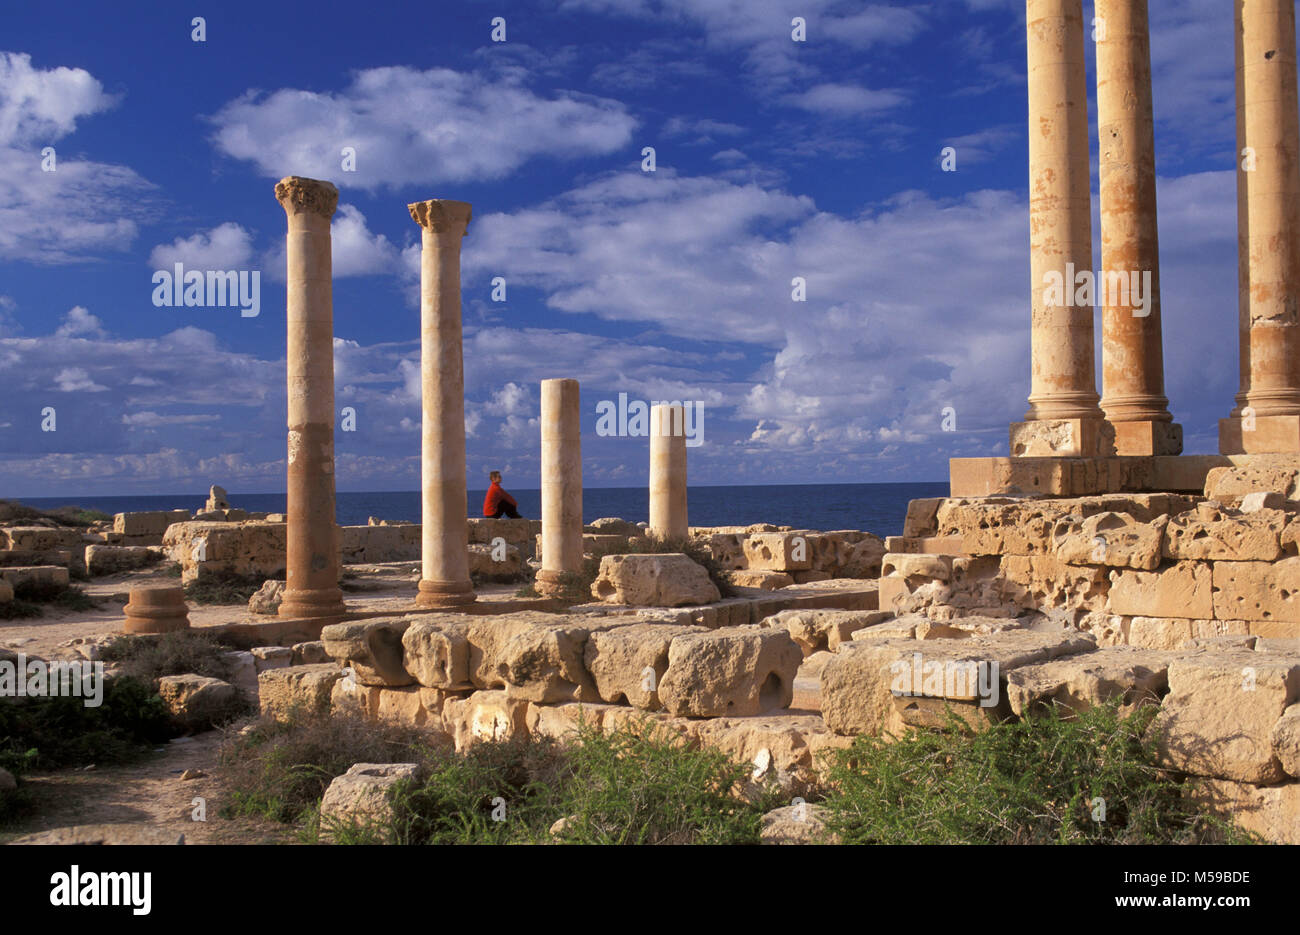 La Libia. Tripoli. Sabratha. (Sabrata). Le rovine romane. Rovine del tempio di Iside. Unesco World Heritage Site. Sito archeologico di Sabratha. Foto Stock